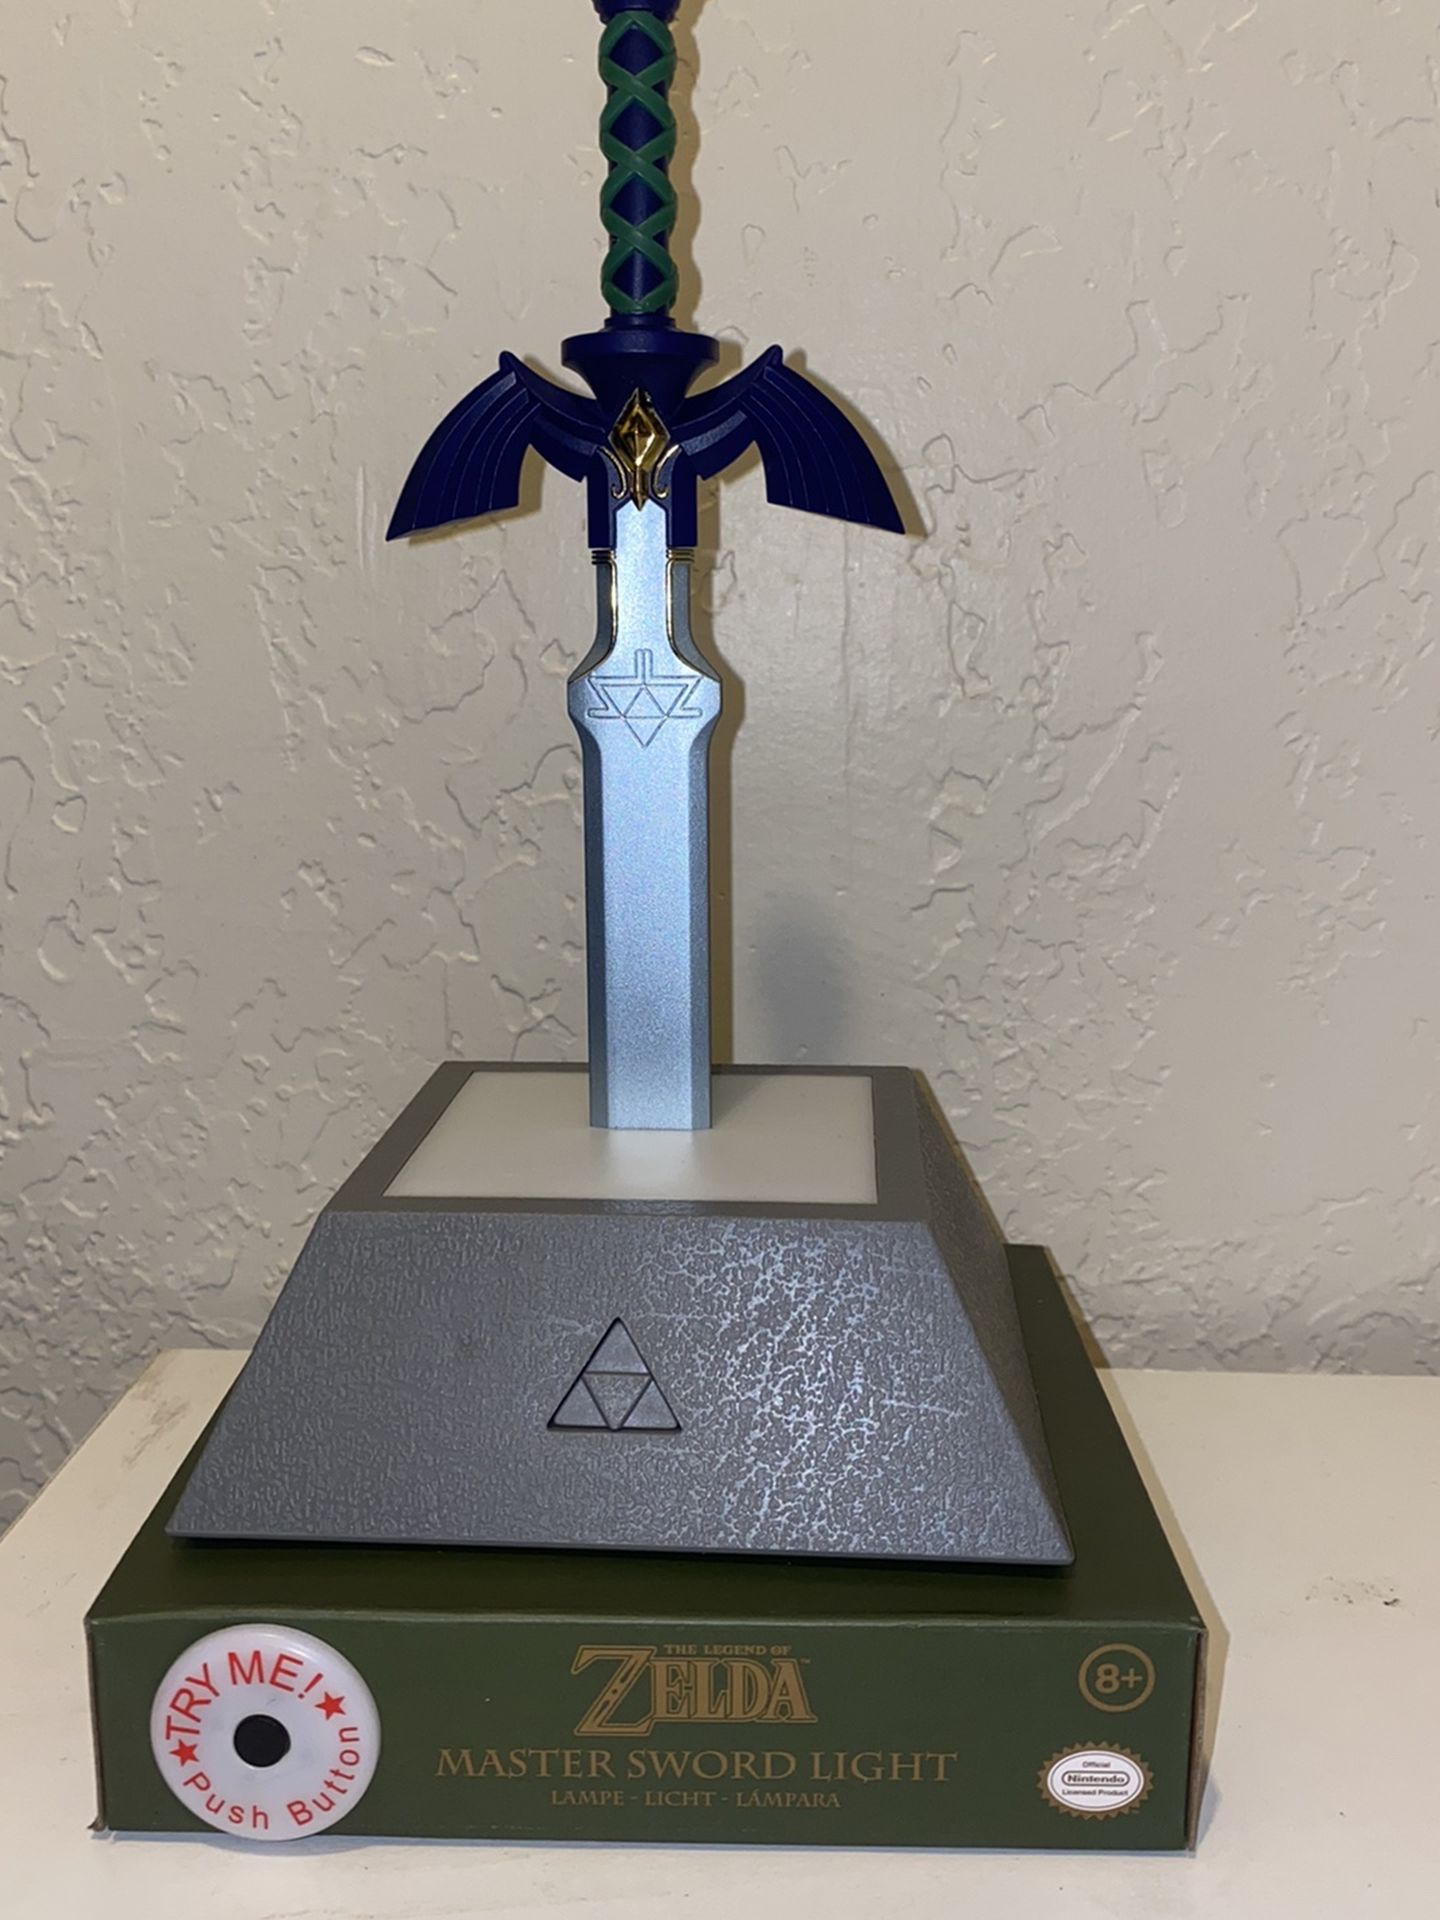 Legend Of Zelda Master Sword Light Display